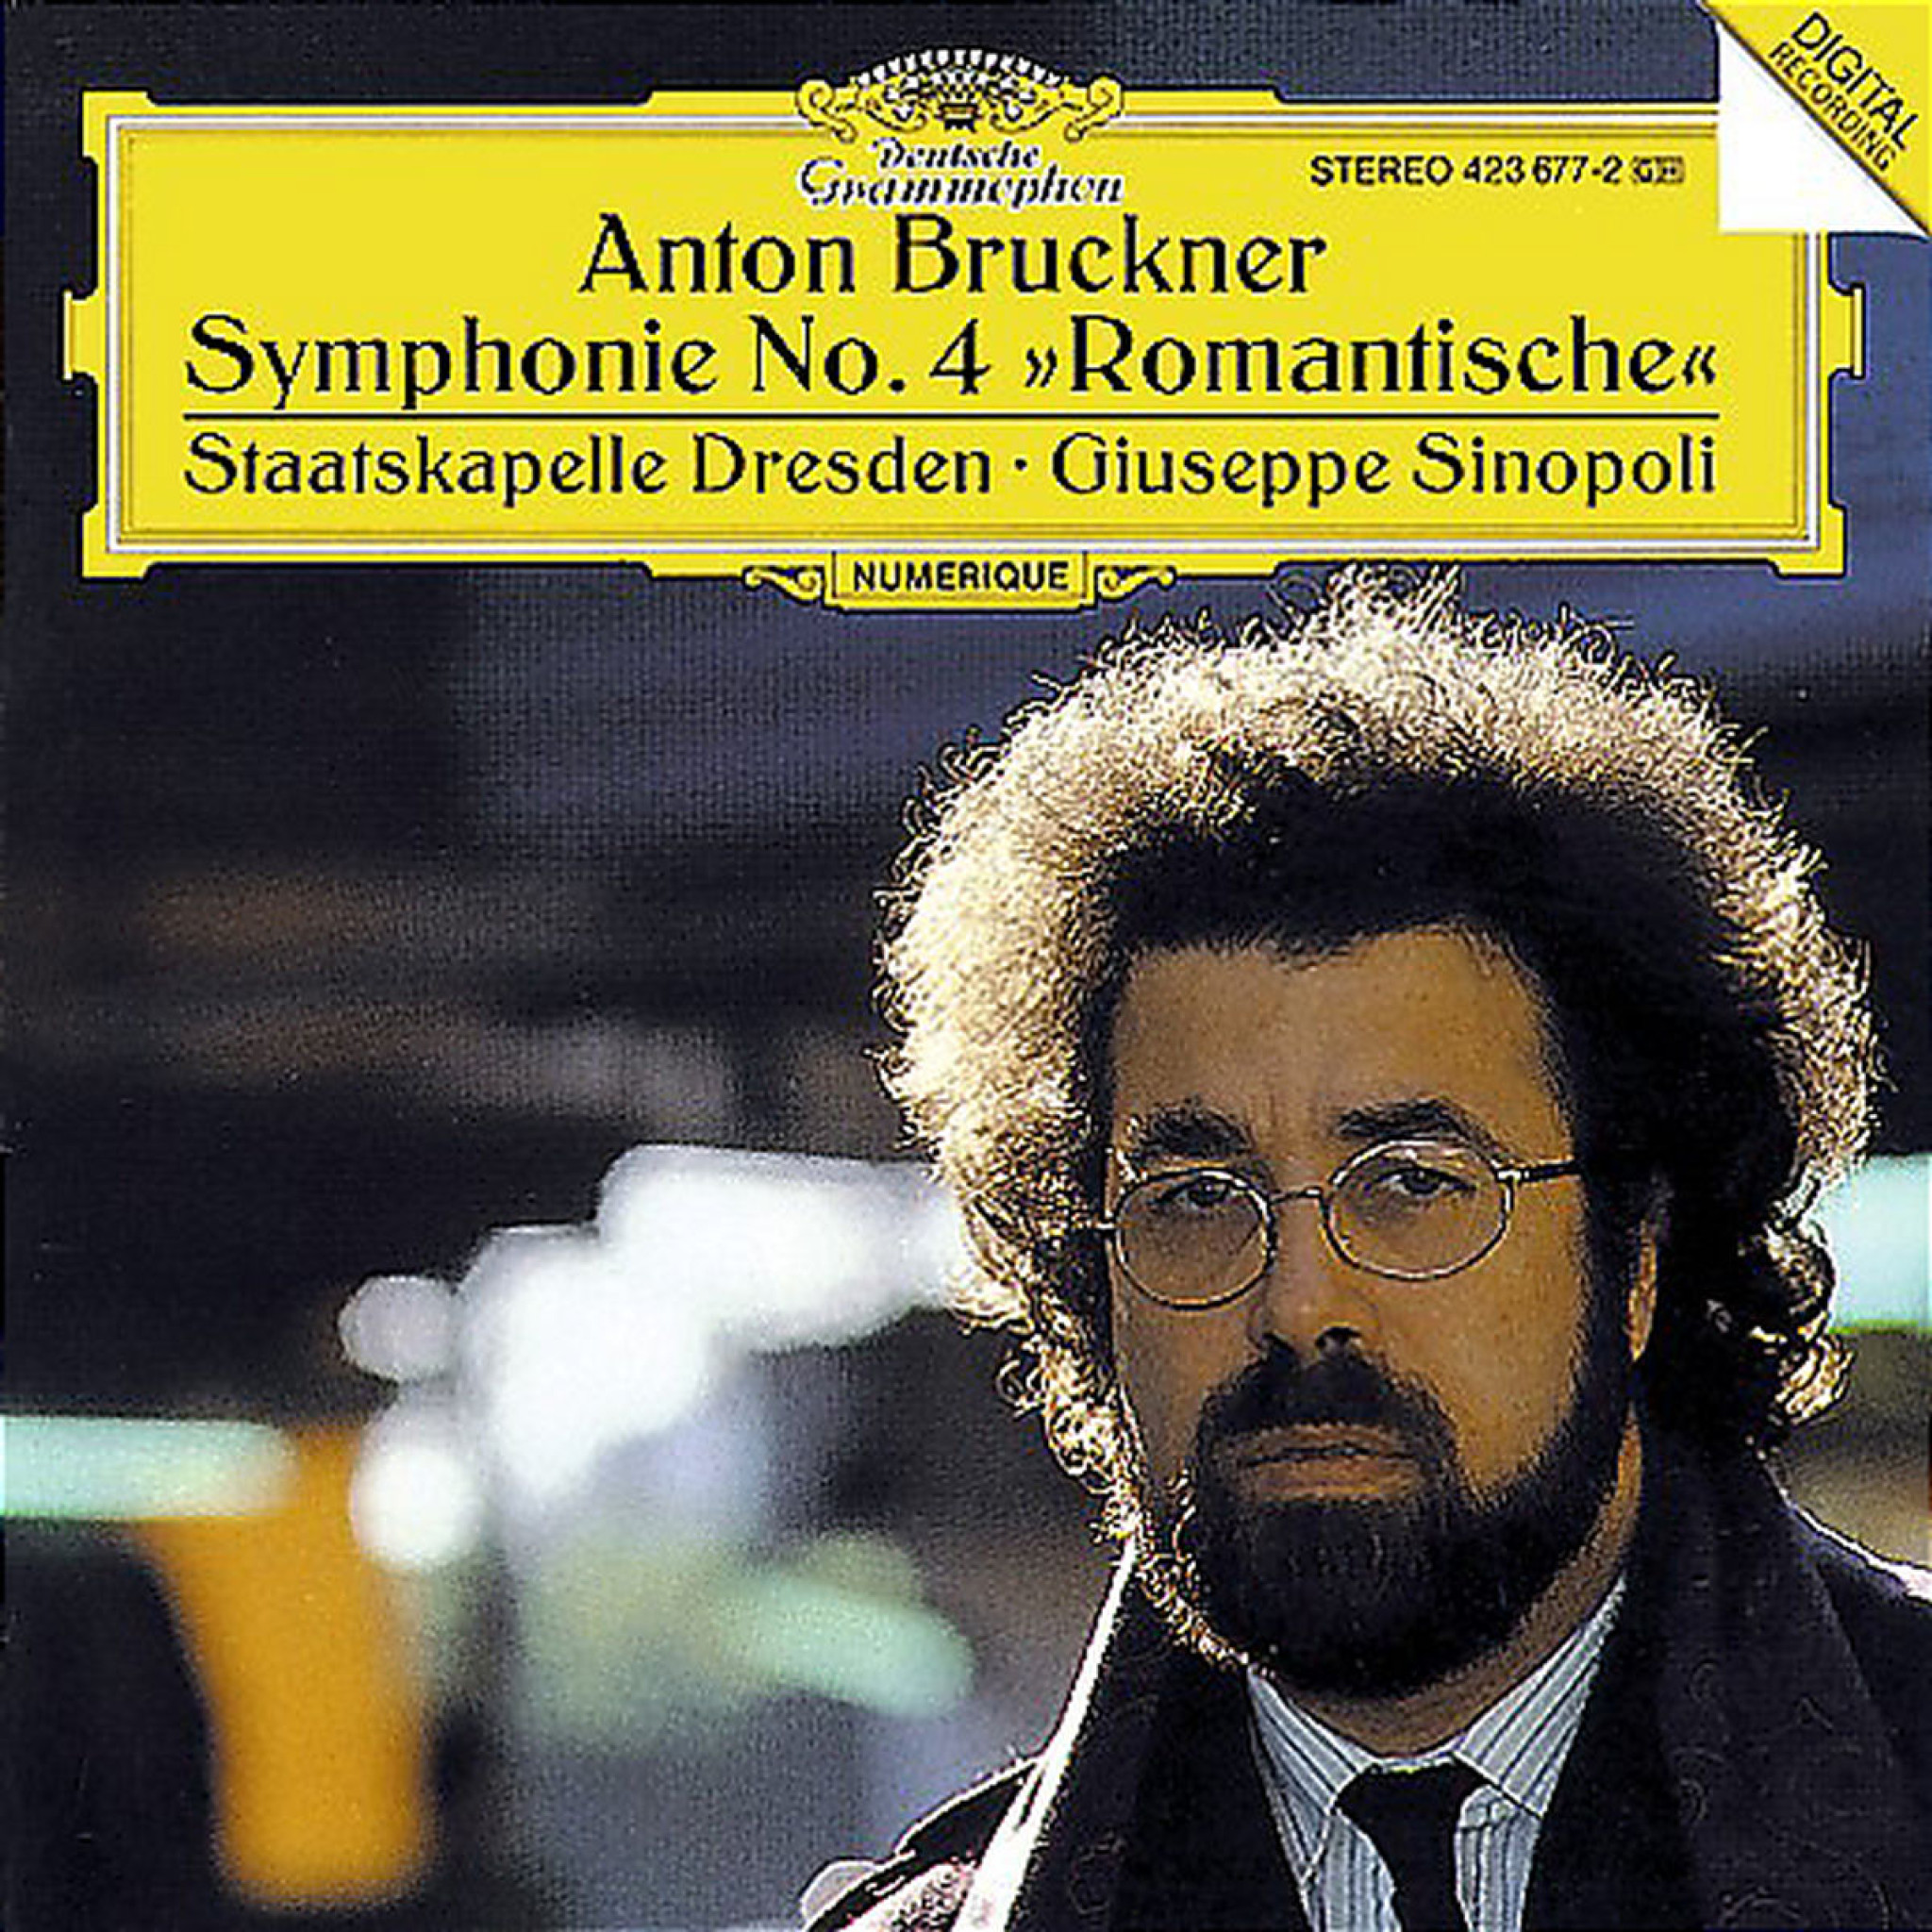 Bruckner: Symphony No.4 "Romantic" 0028942367722